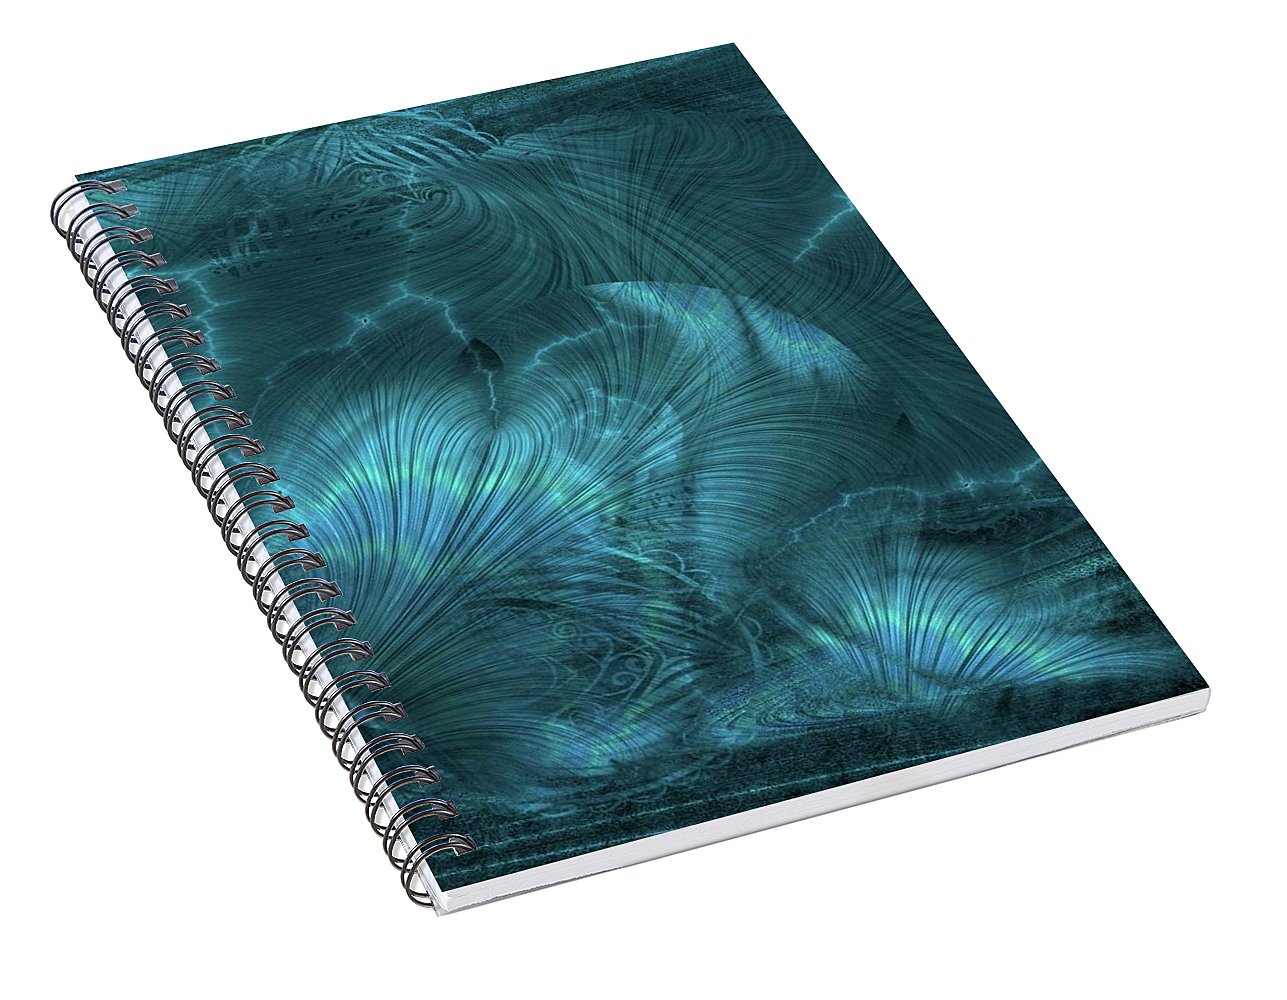 I gOt Memories Blue Metallic Abstract - Spiral Notebook